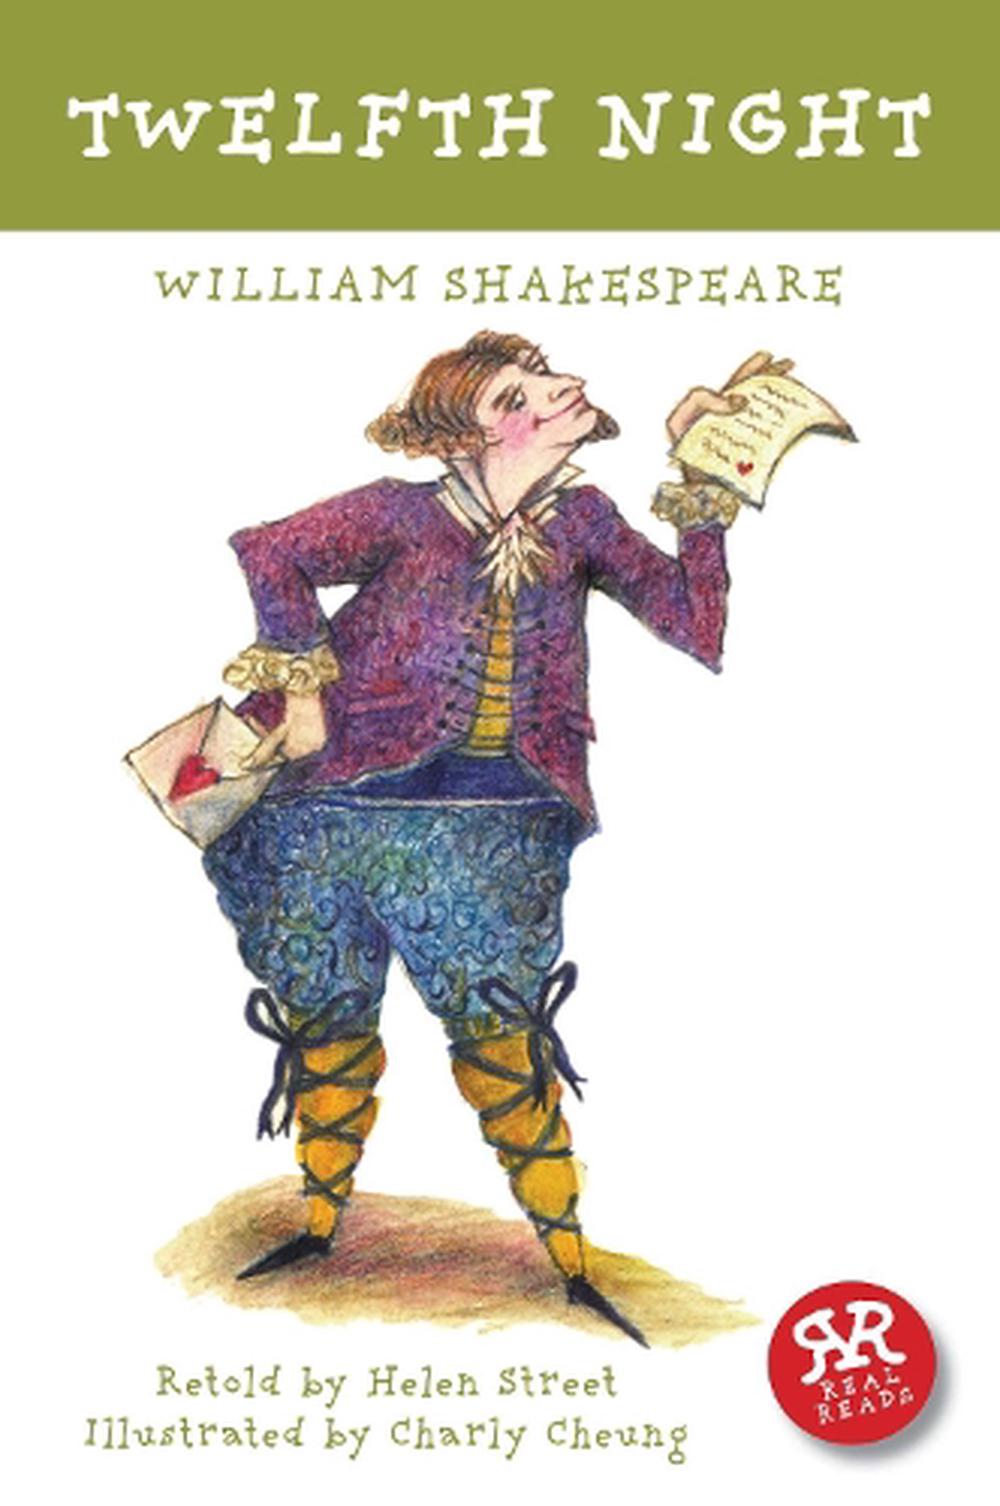 12 night william shakespeare